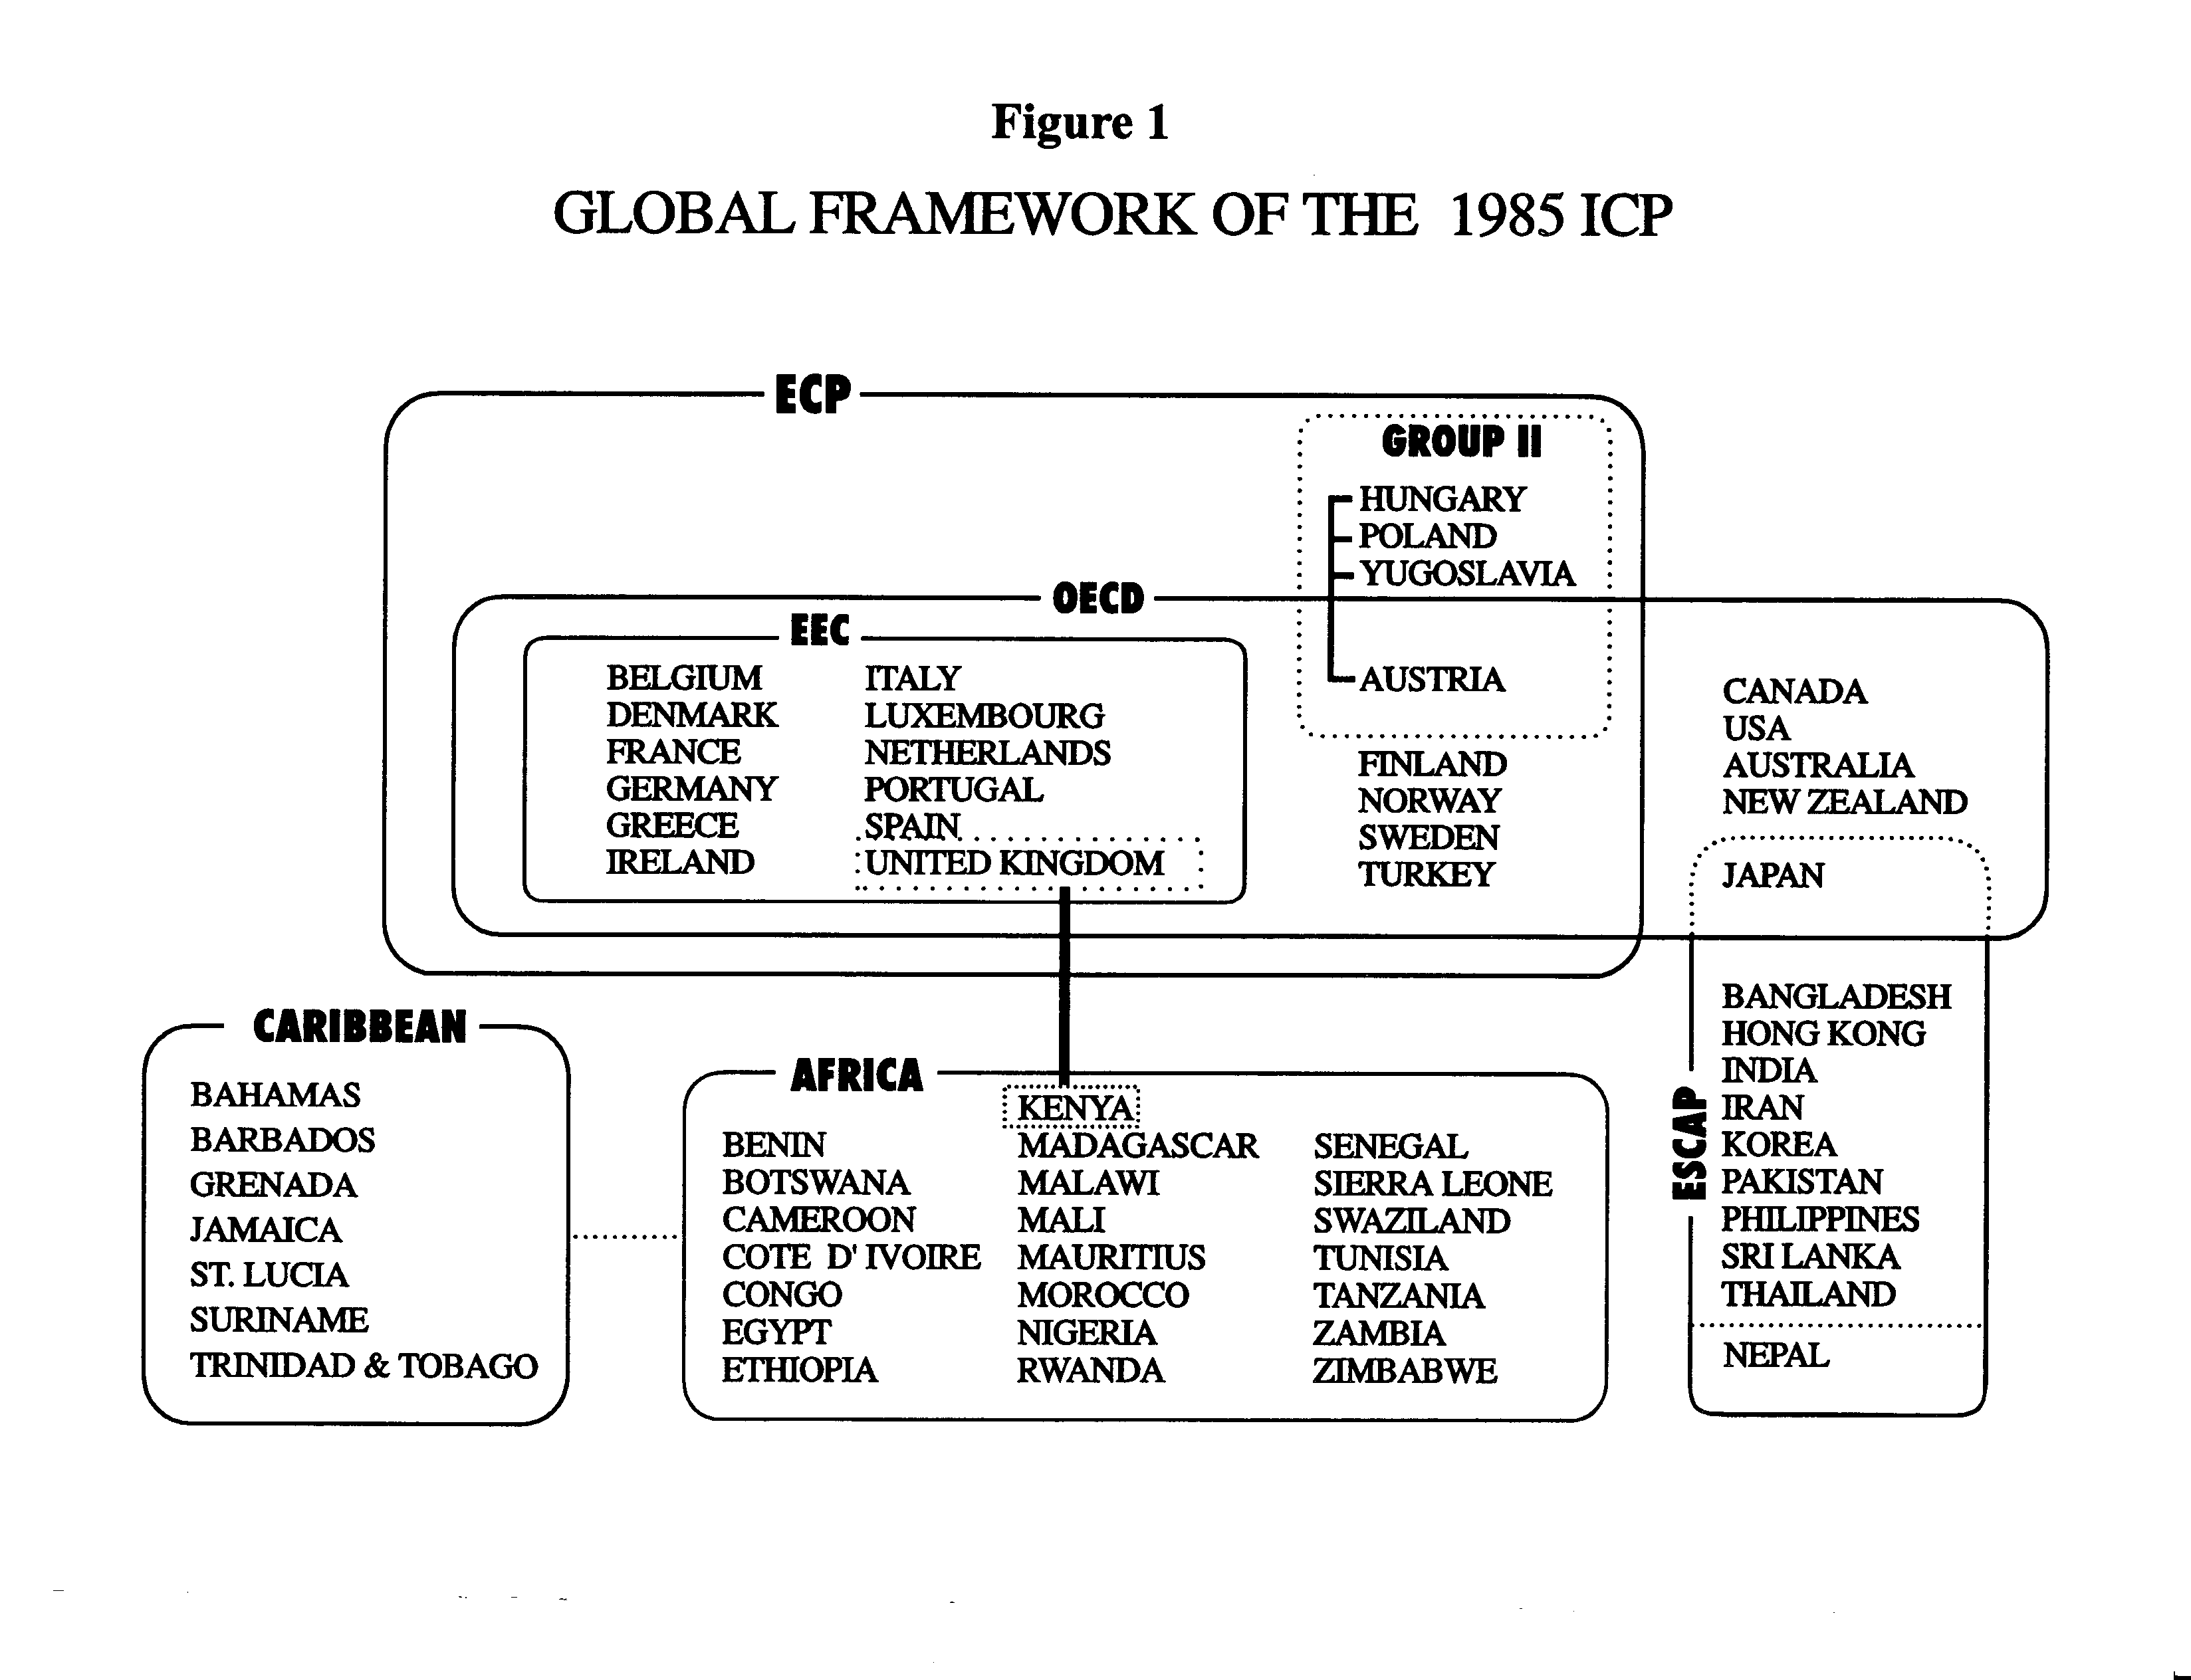 Figure 1. Global Framework of the 1985 ICP